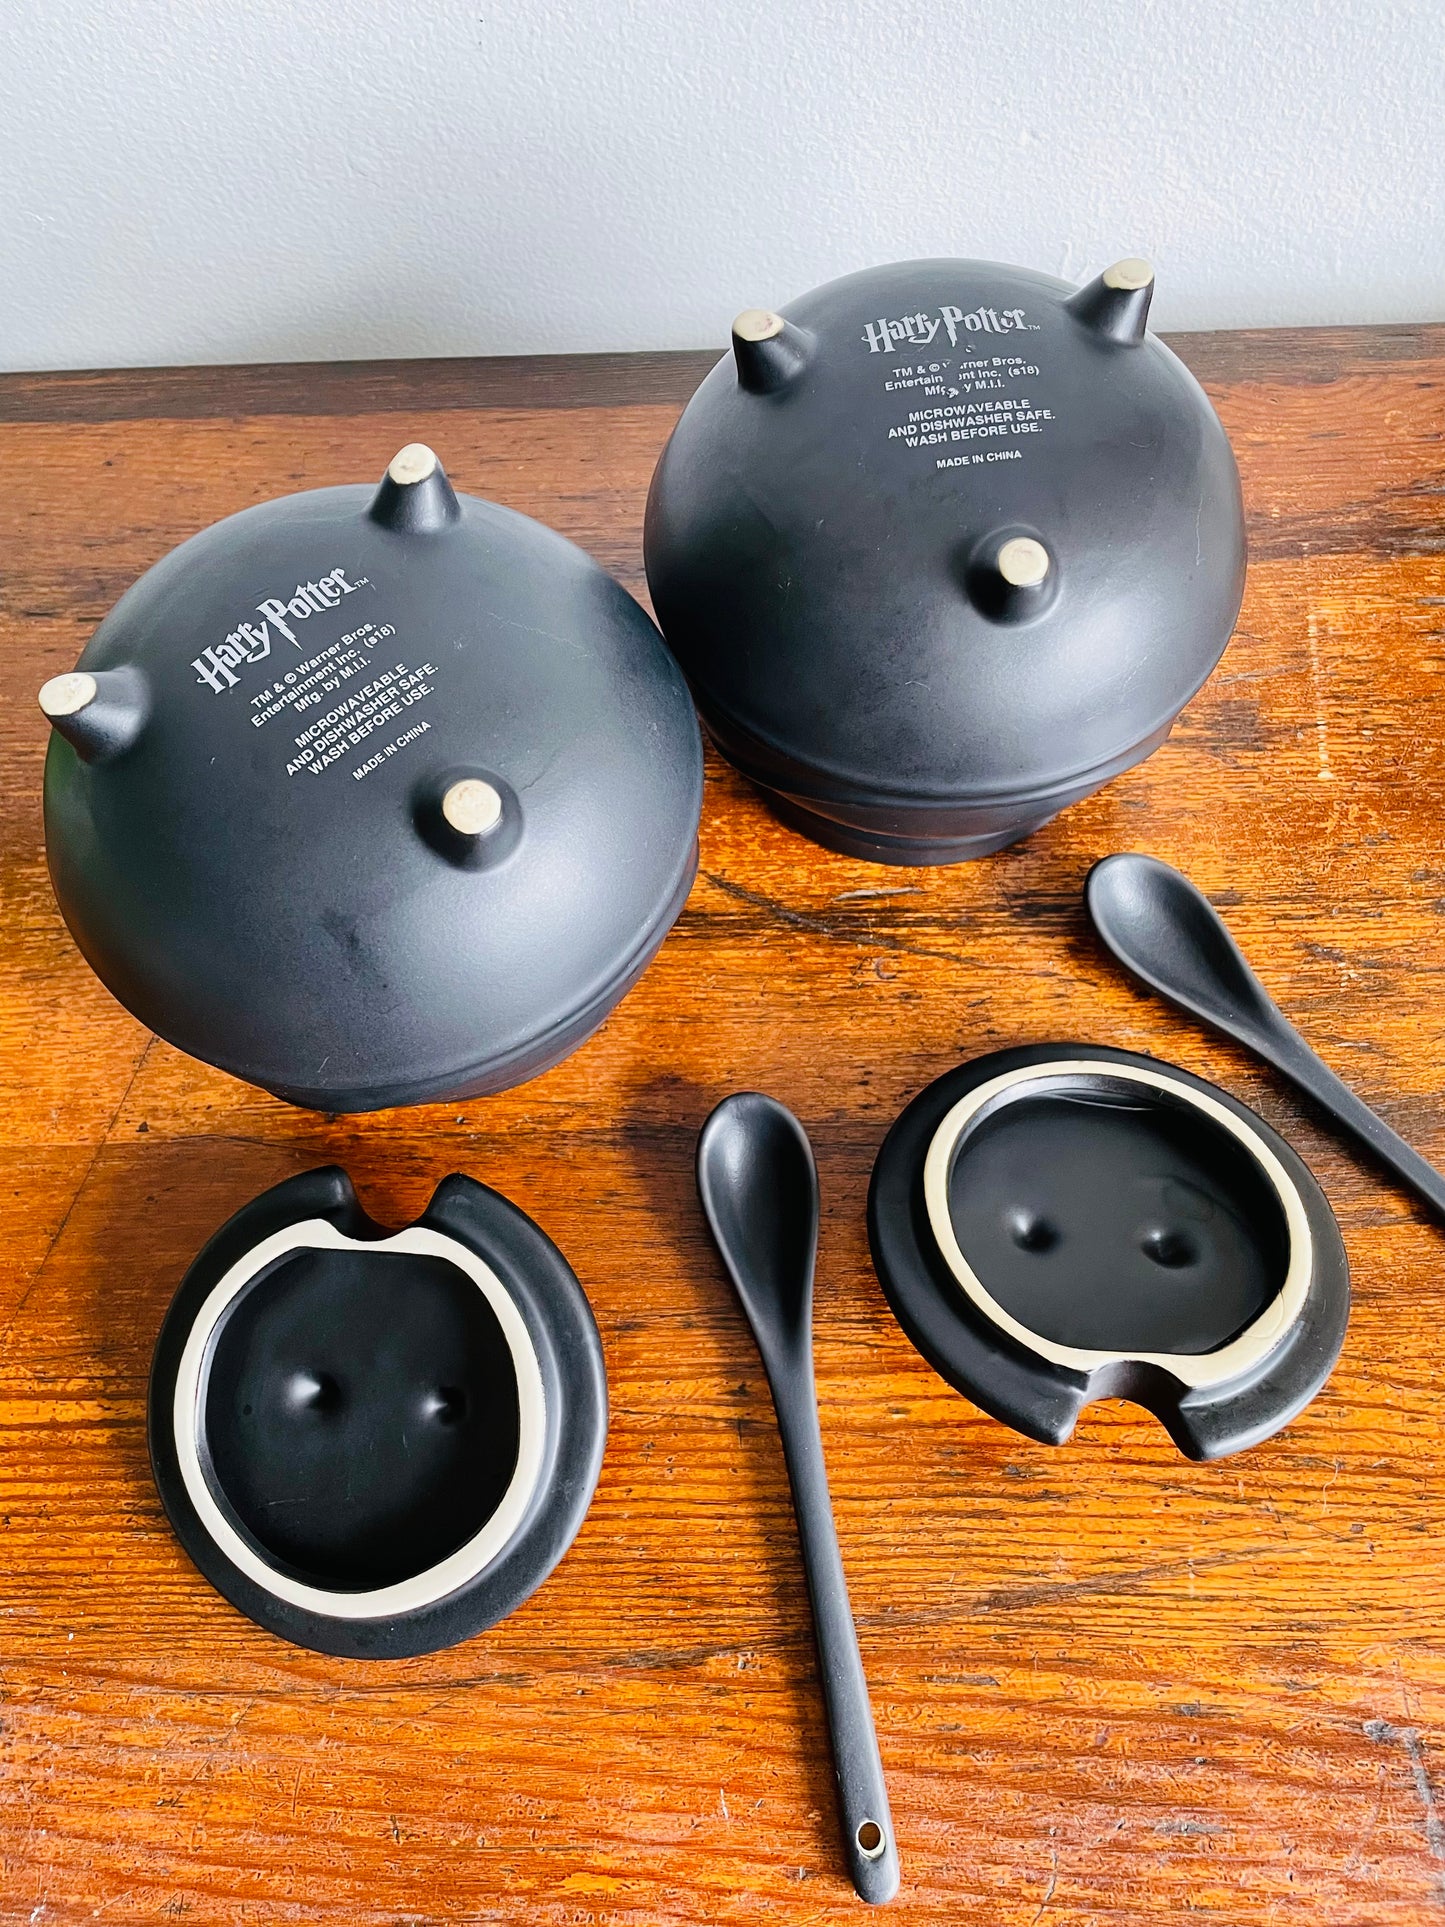 Harry Potter Soup Bowls - Black Cauldrons with Lids & Spoons